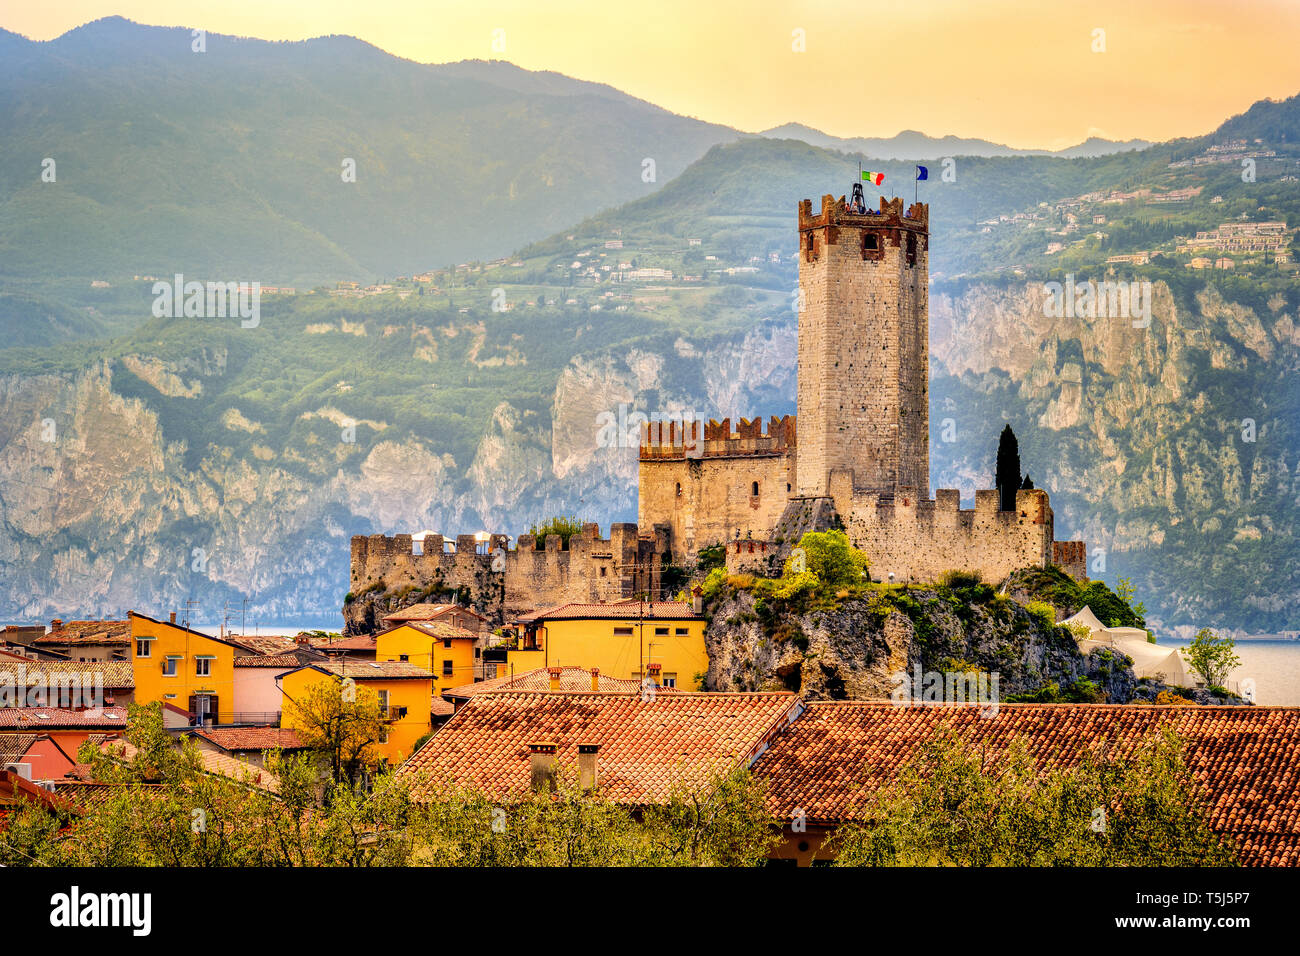 Italienisches Dorf Malcesine friedliche Stadt und Burg am Gardasee waterfront romantisch idyllische malerischen Sonnenuntergang Stockfoto